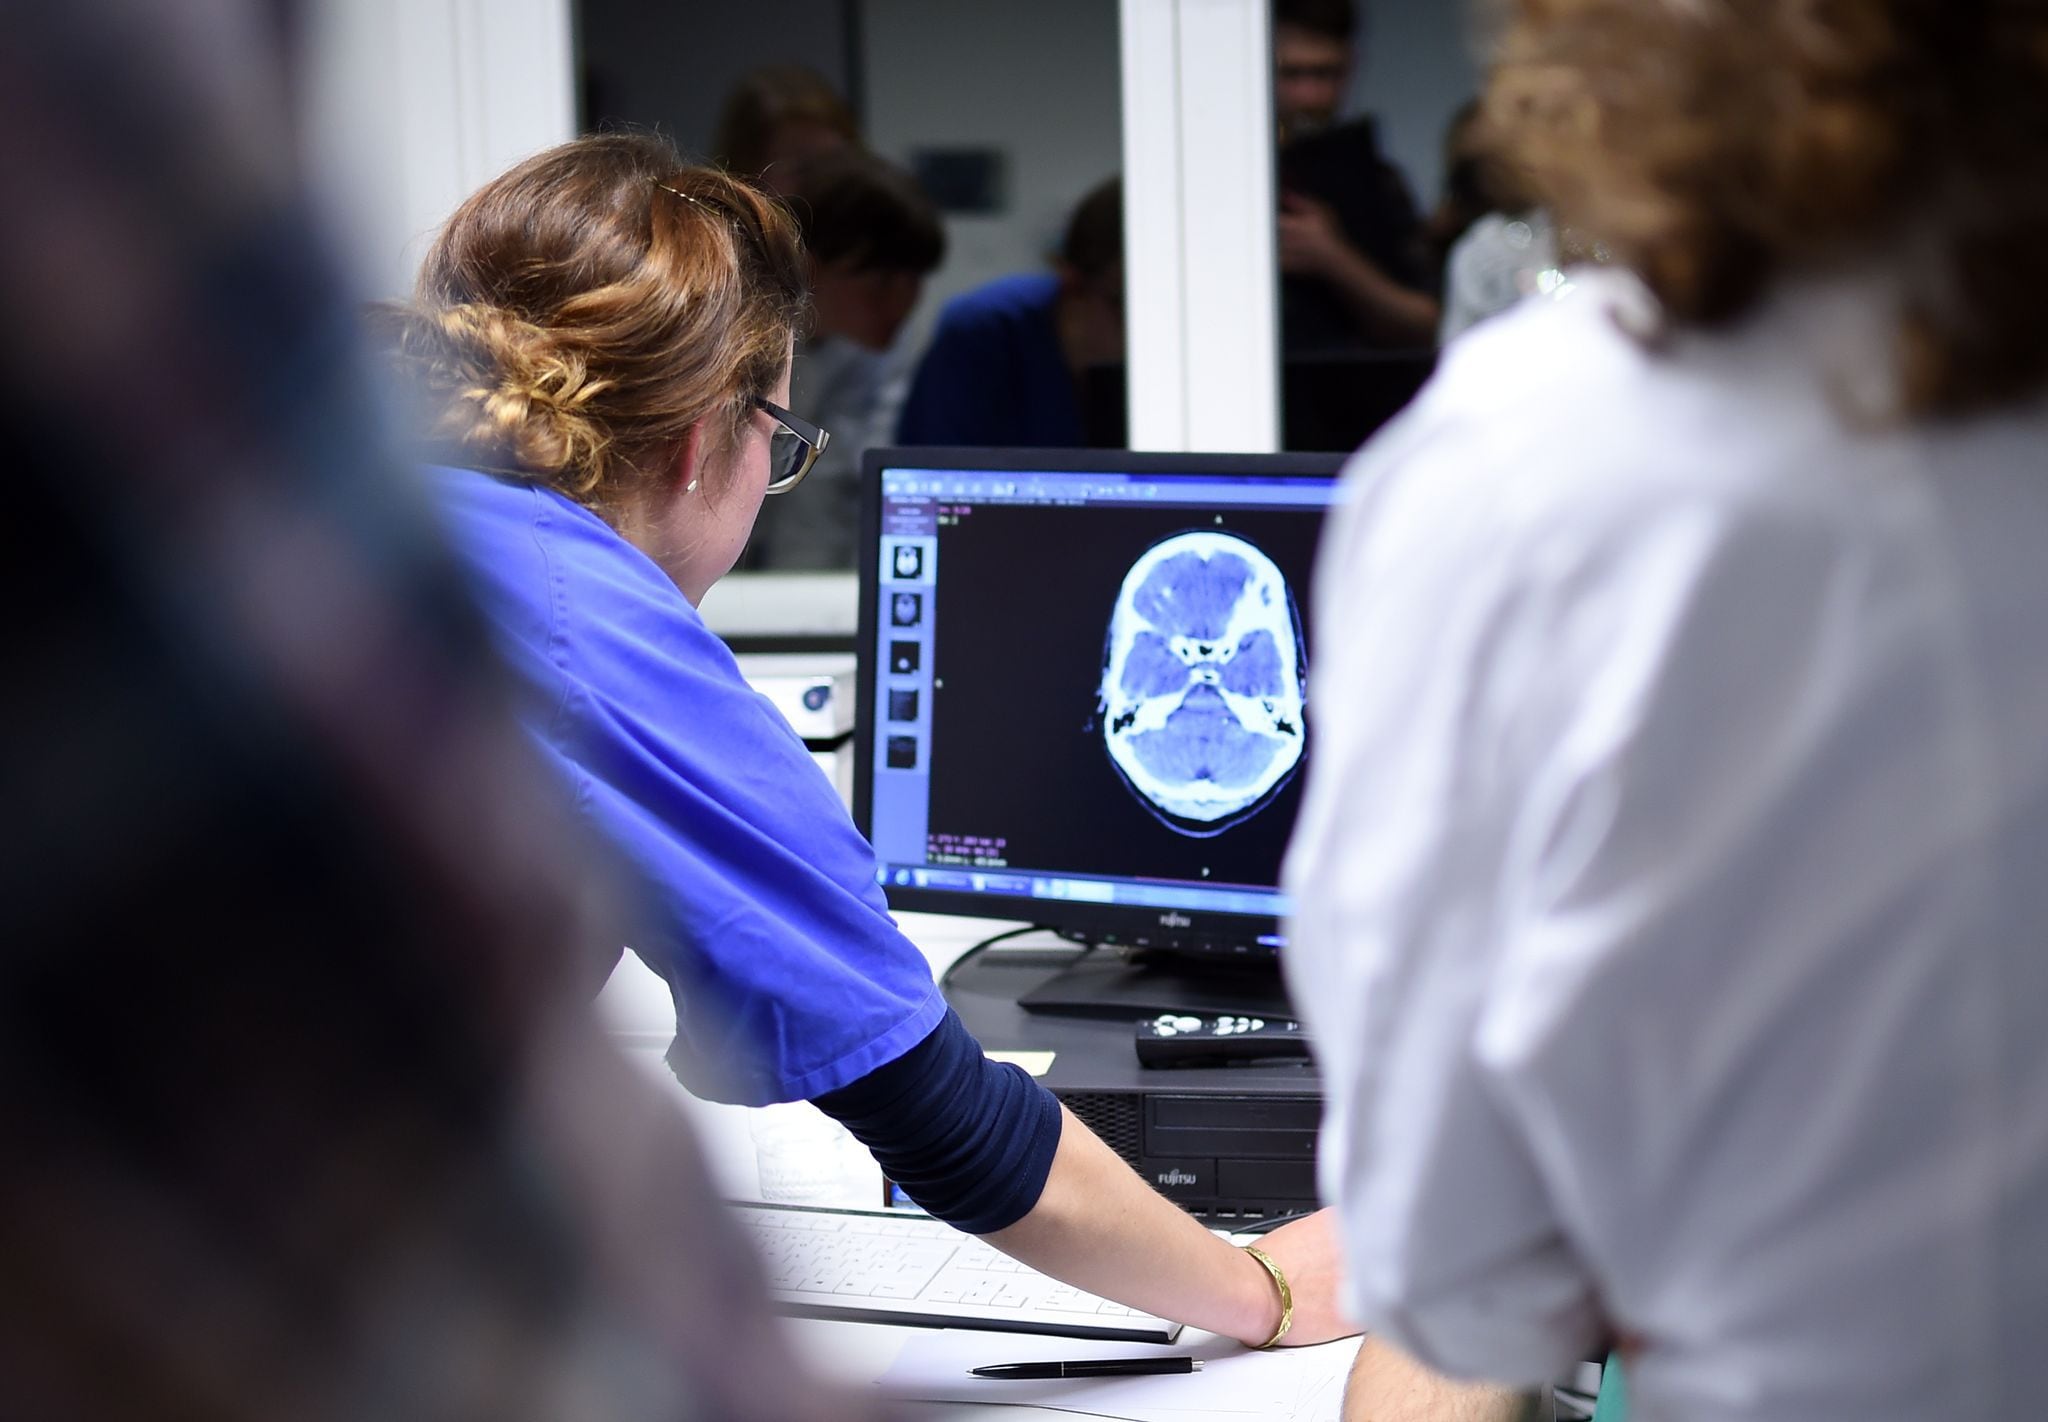 Médicos analizan imágenes mediante tomografías (Foto: Britta Pedersen/dpa)